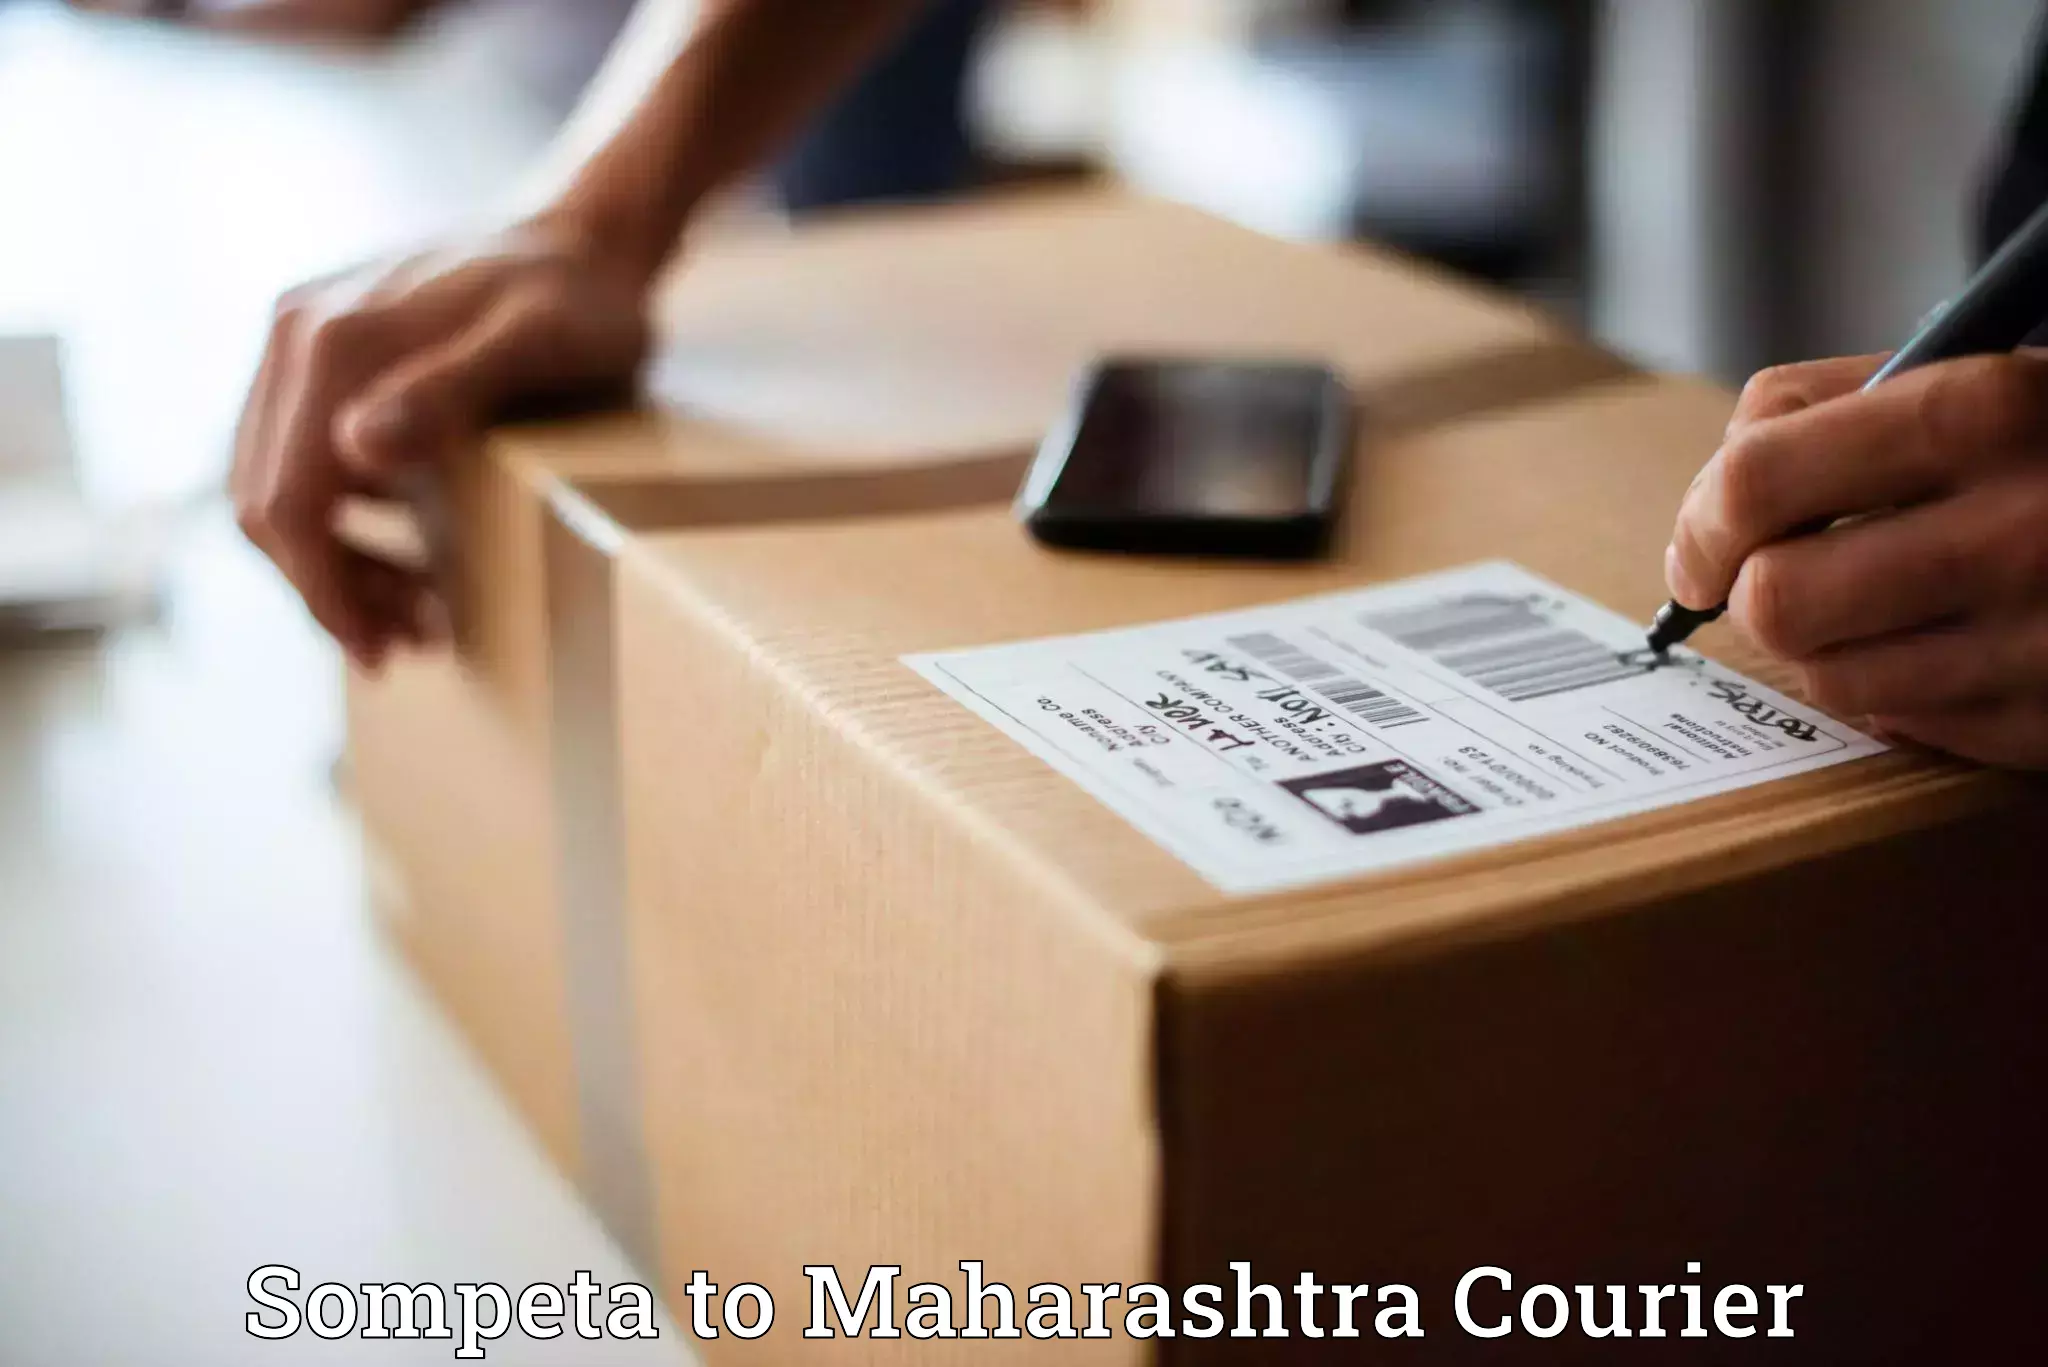 Nationwide parcel services Sompeta to Aurangabad